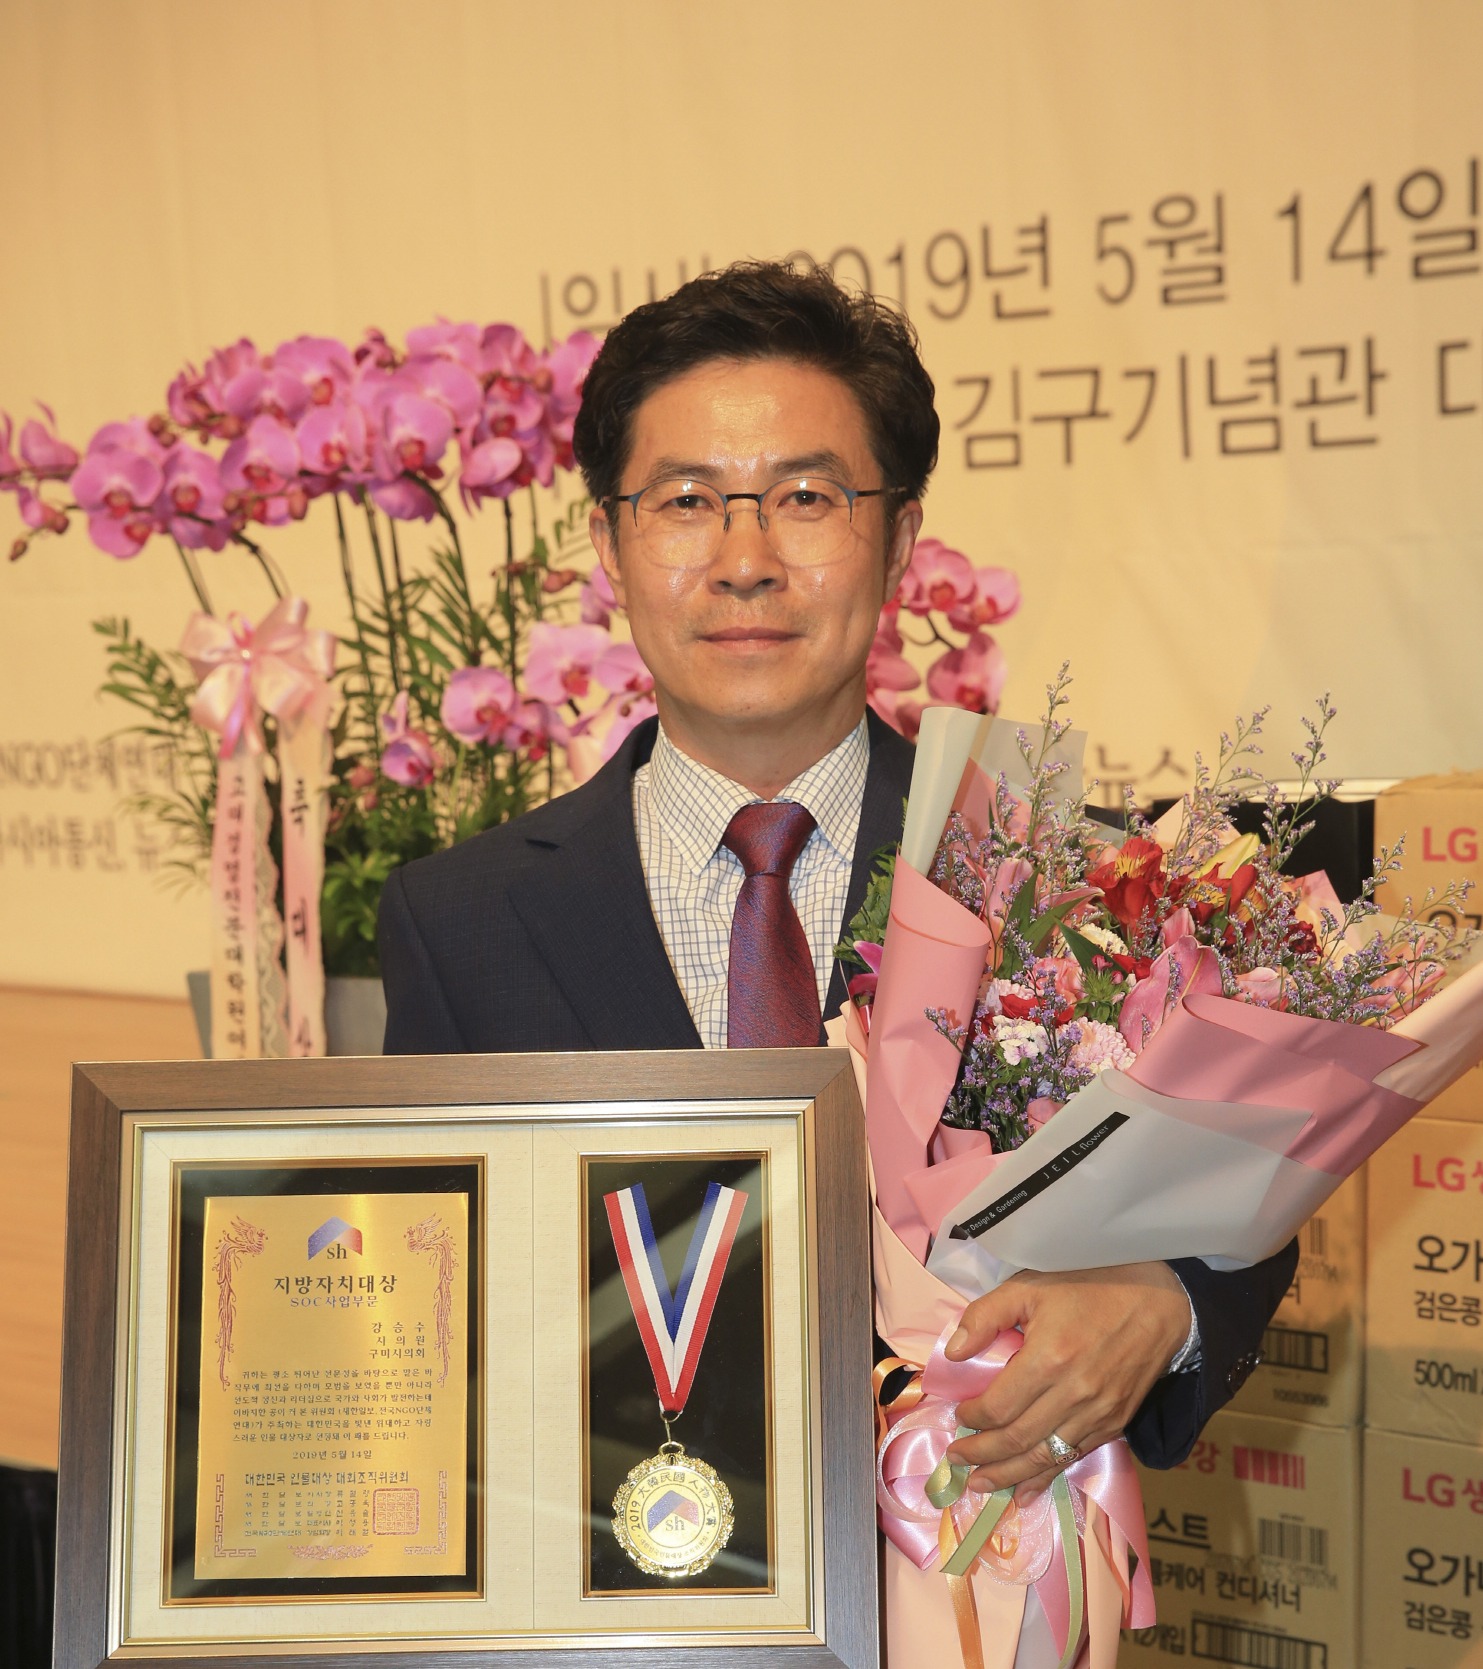 강승수(자유한국당, 고아읍) 구미시의원이 백범김구기념관에서 열린 대한민국을 빛낸 위대한 인물 SOC사업부문 지방자치 대상을 수상했다.